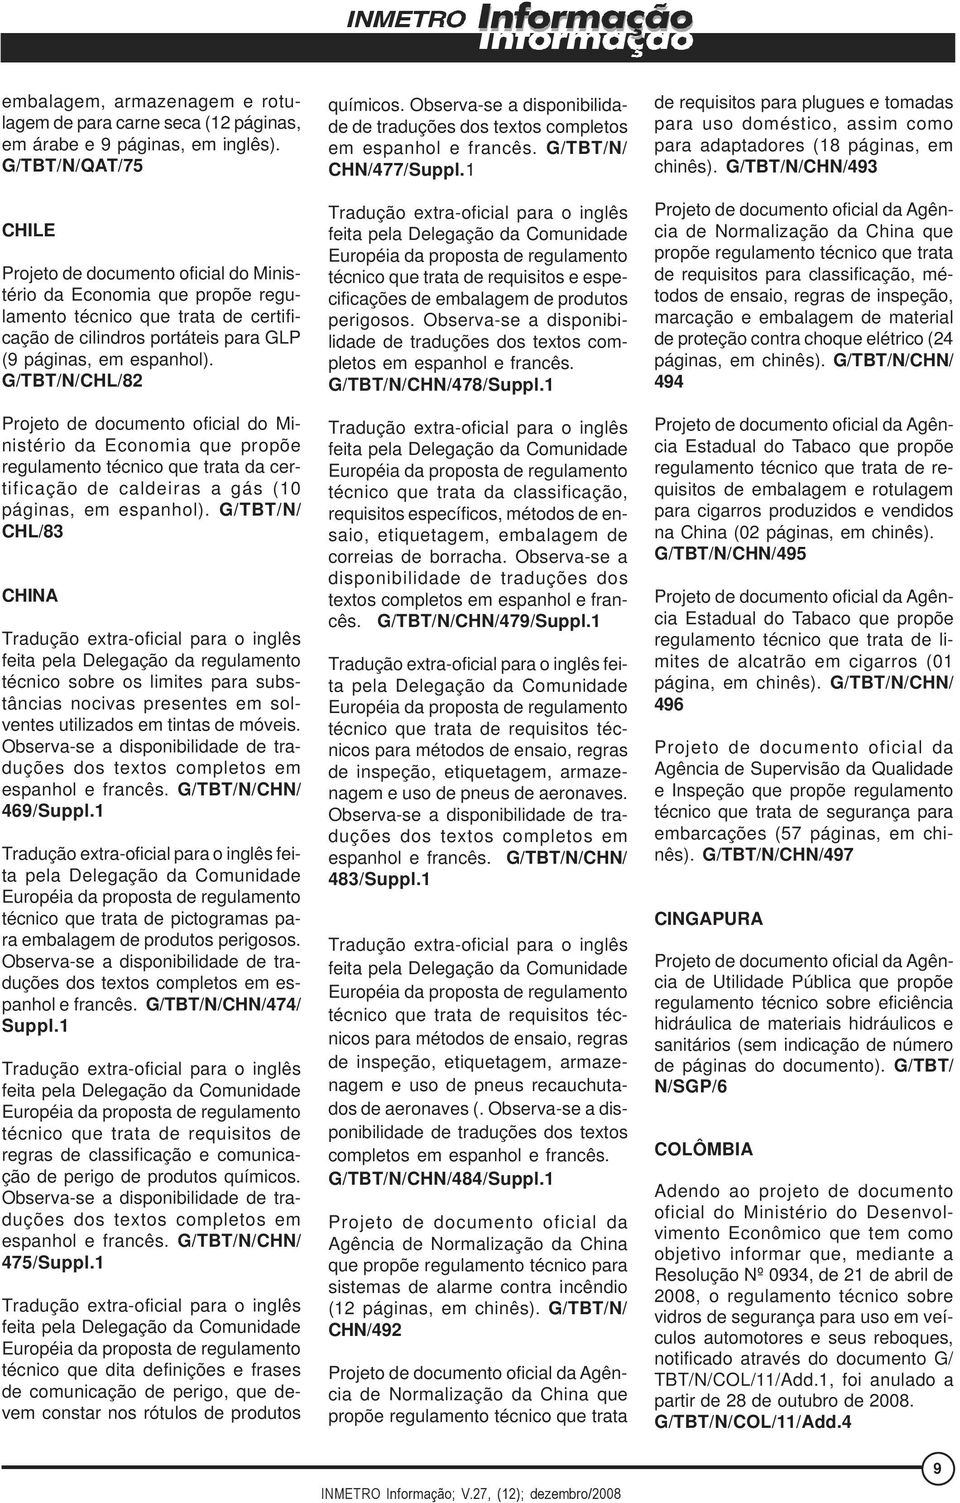 G/TBT/N/CHL/82 da Economia que propõe regulamento técnico que trata da certificação de caldeiras a gás (10 páginas, em espanhol).